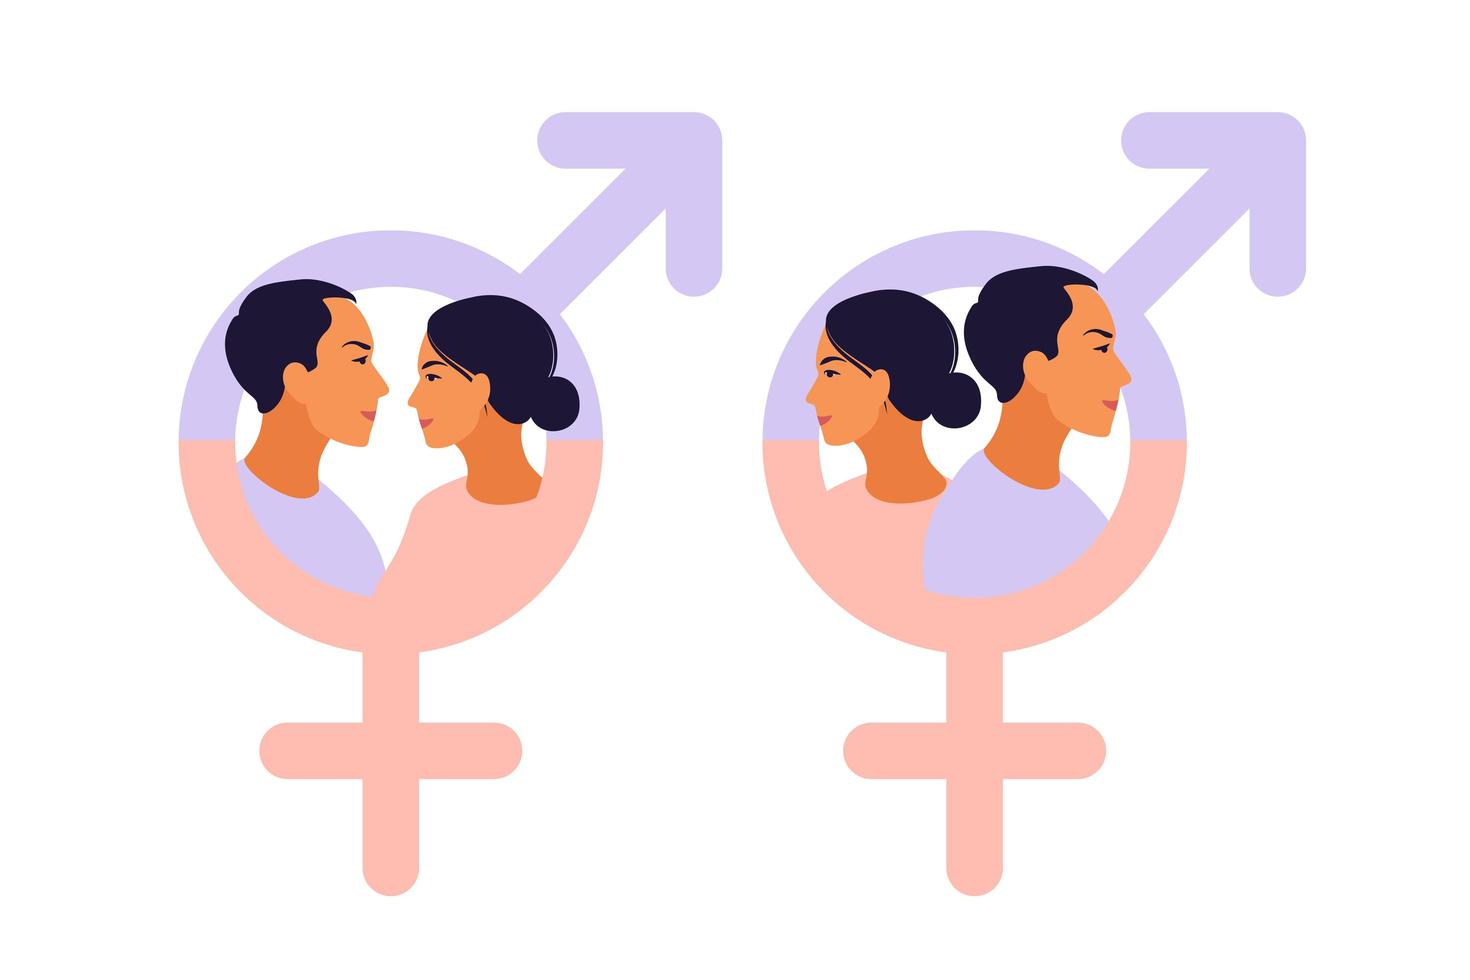 símbolo de homens e mulheres. símbolo de igualdade de gênero. vetor